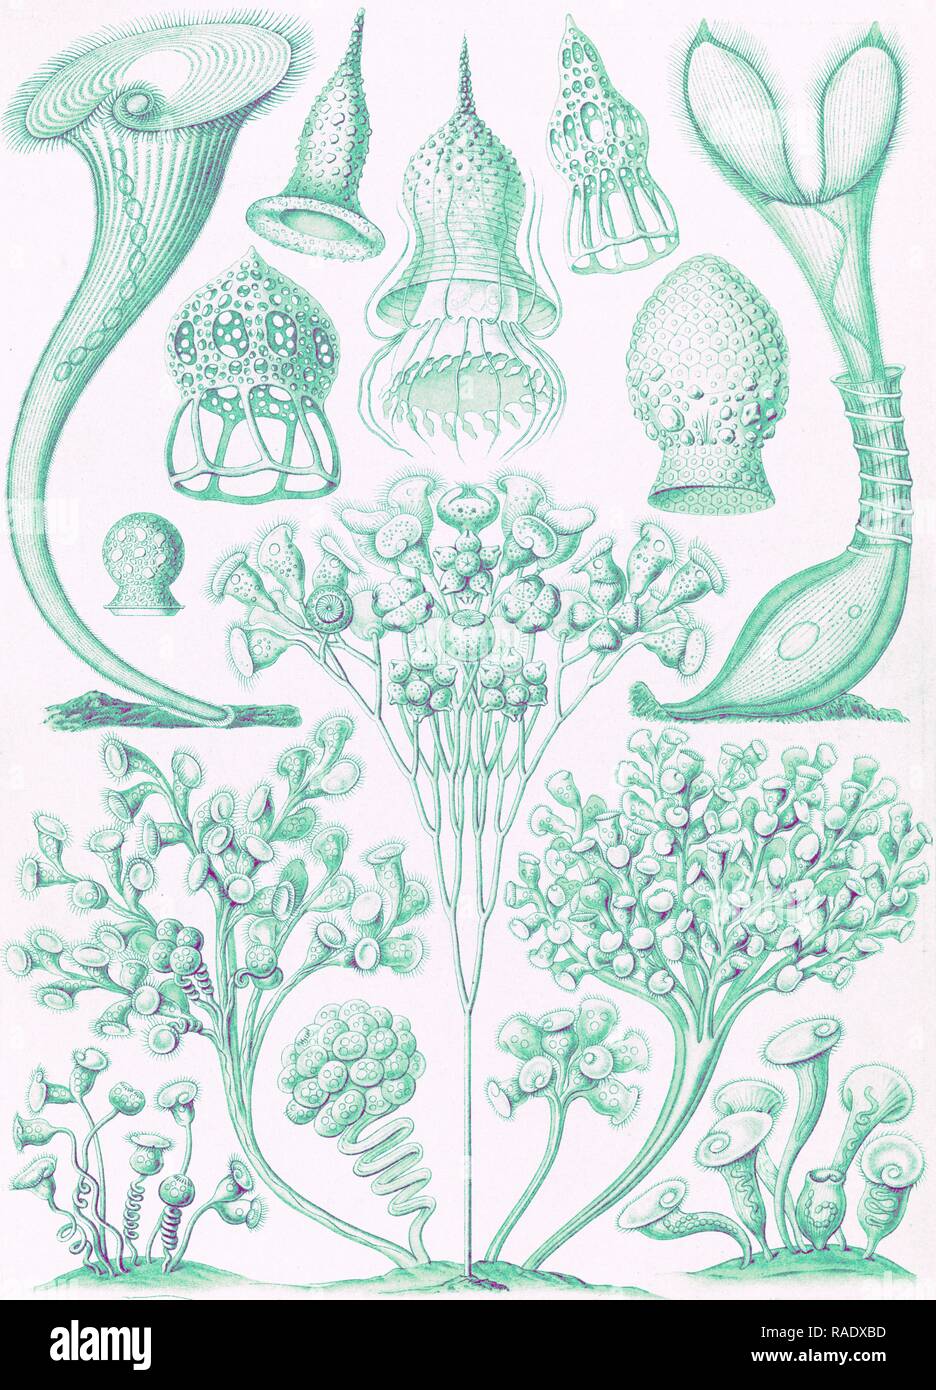 L'illustration montre les micro-organismes. Ciliata. - Wimperlinge, 1 : impression lithographie couleur feuille , 36 x 26 cm., 1904 repensé Banque D'Images